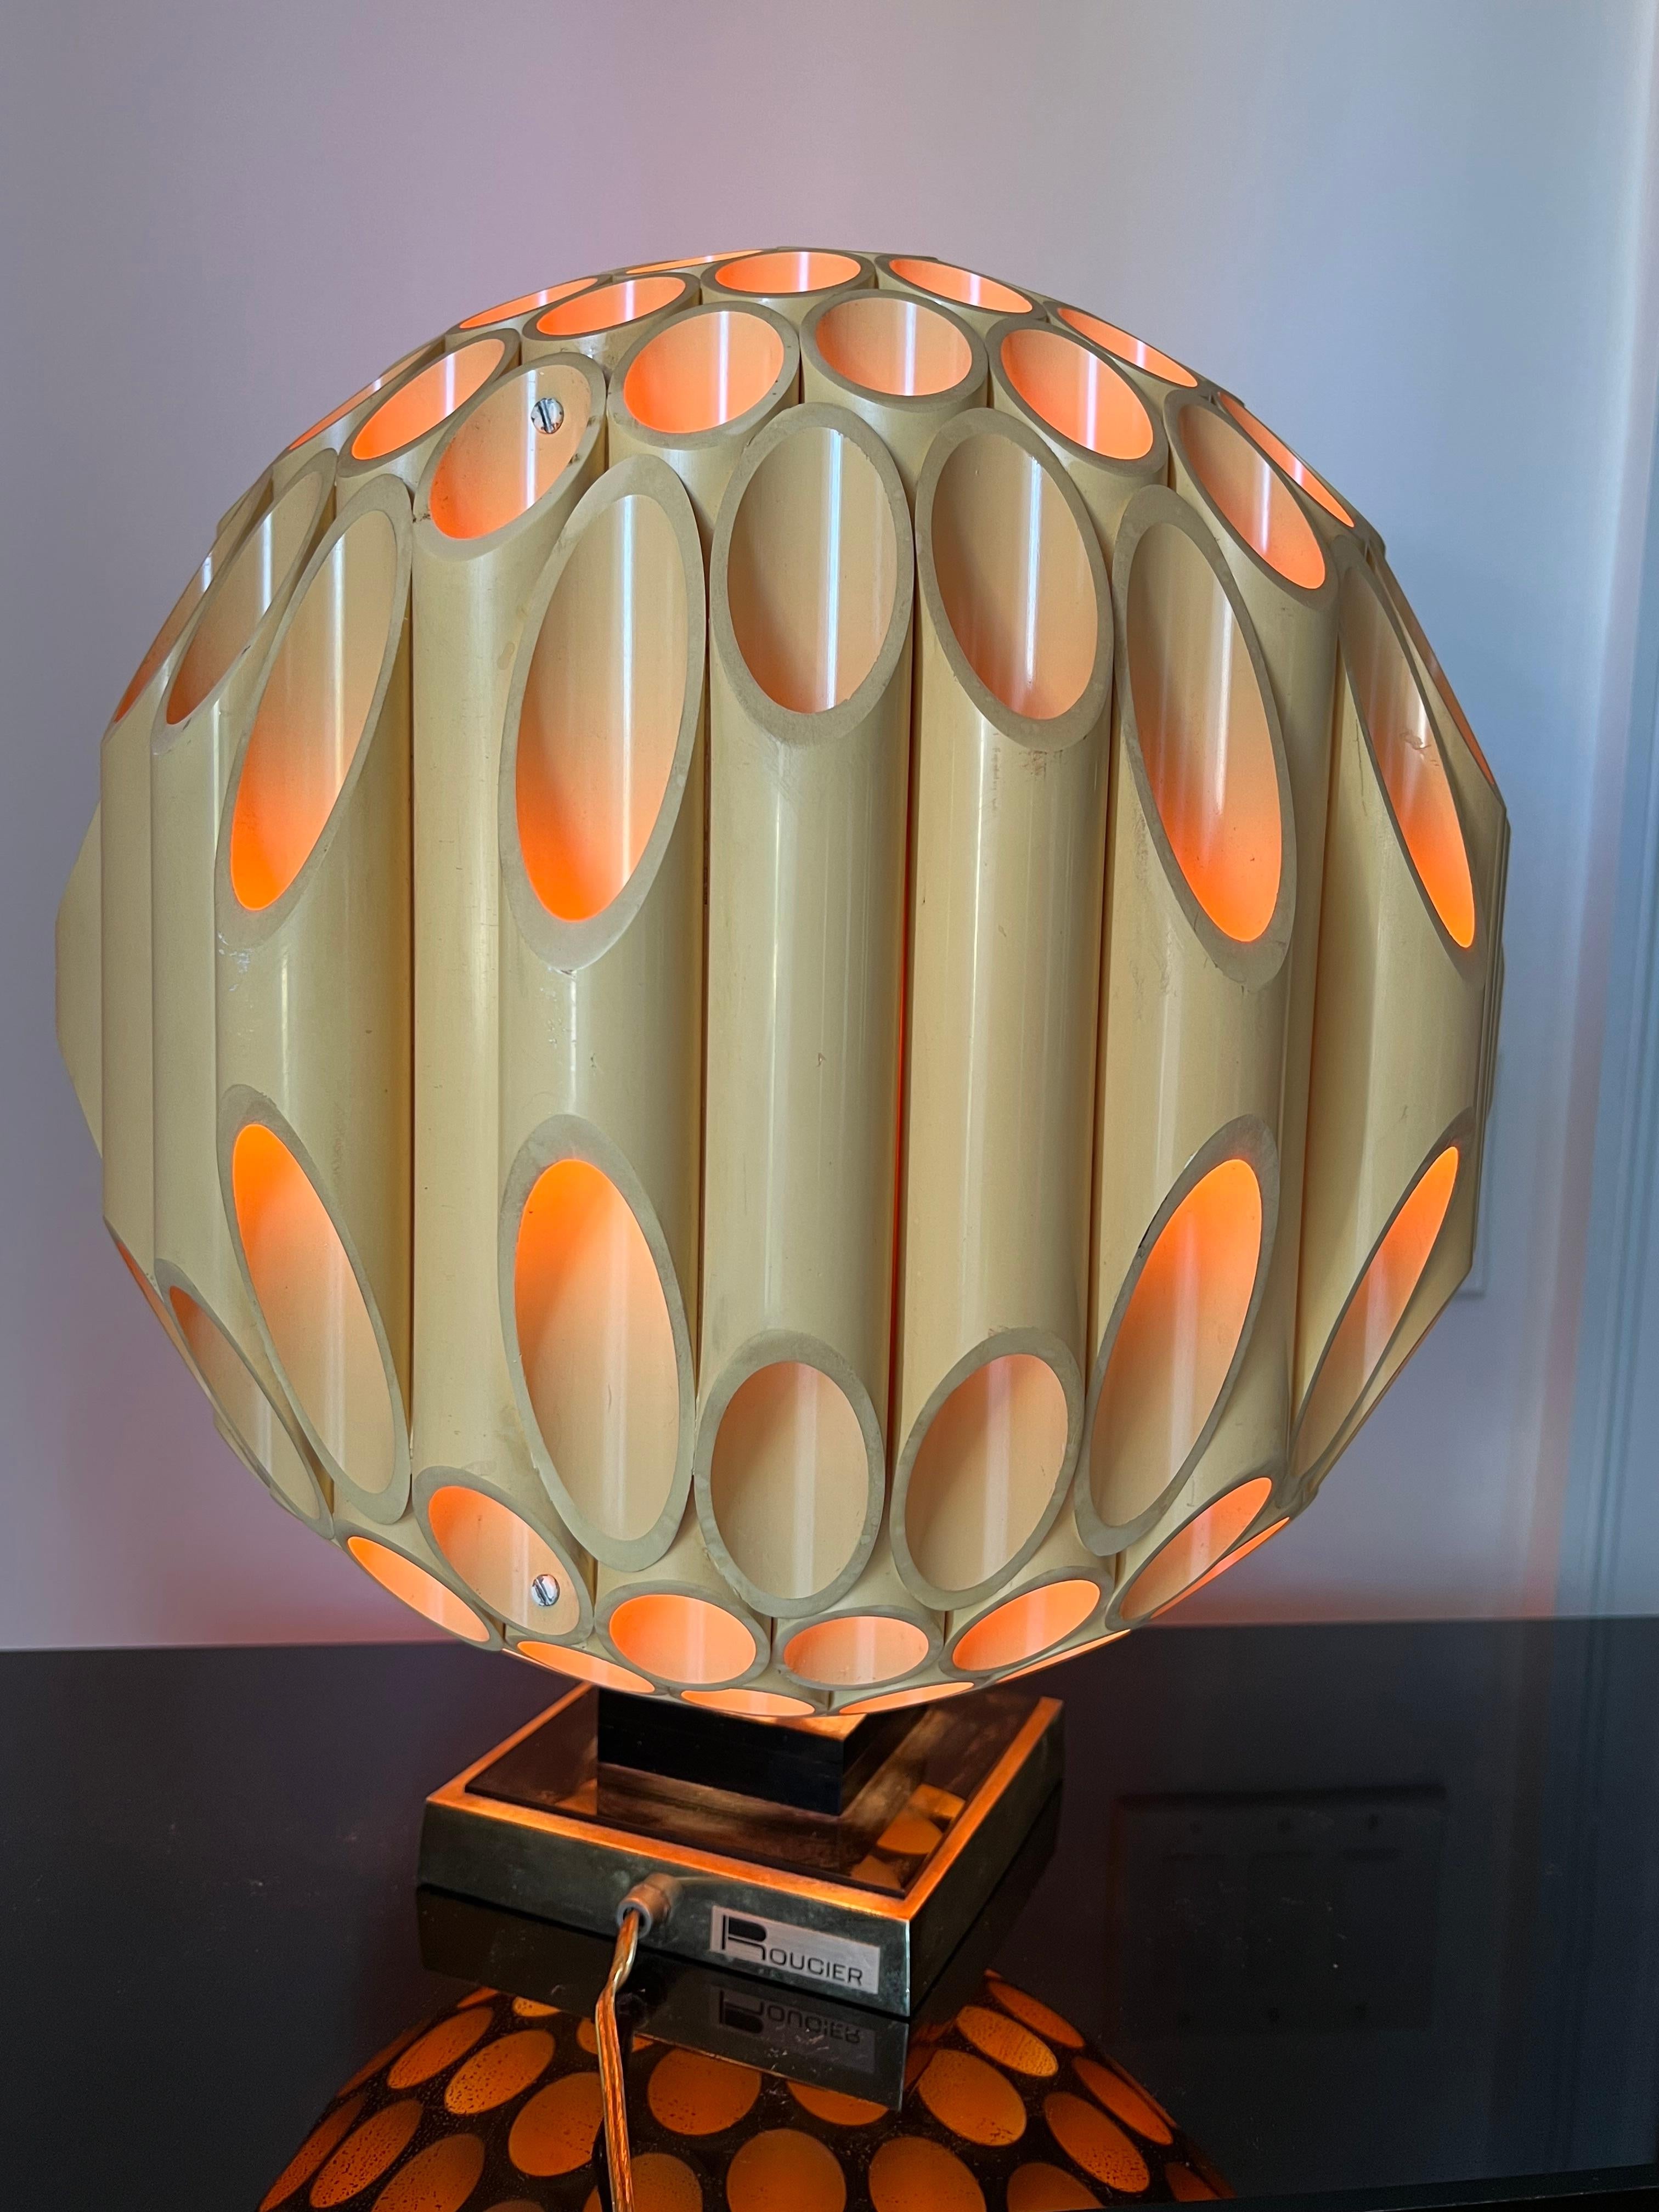 Lampe à tube sphérique originale Rougier des années 1970, numérotée #211, fabriquée le 19 mai 1982. Voir le Label sur le dessous de la lampe.